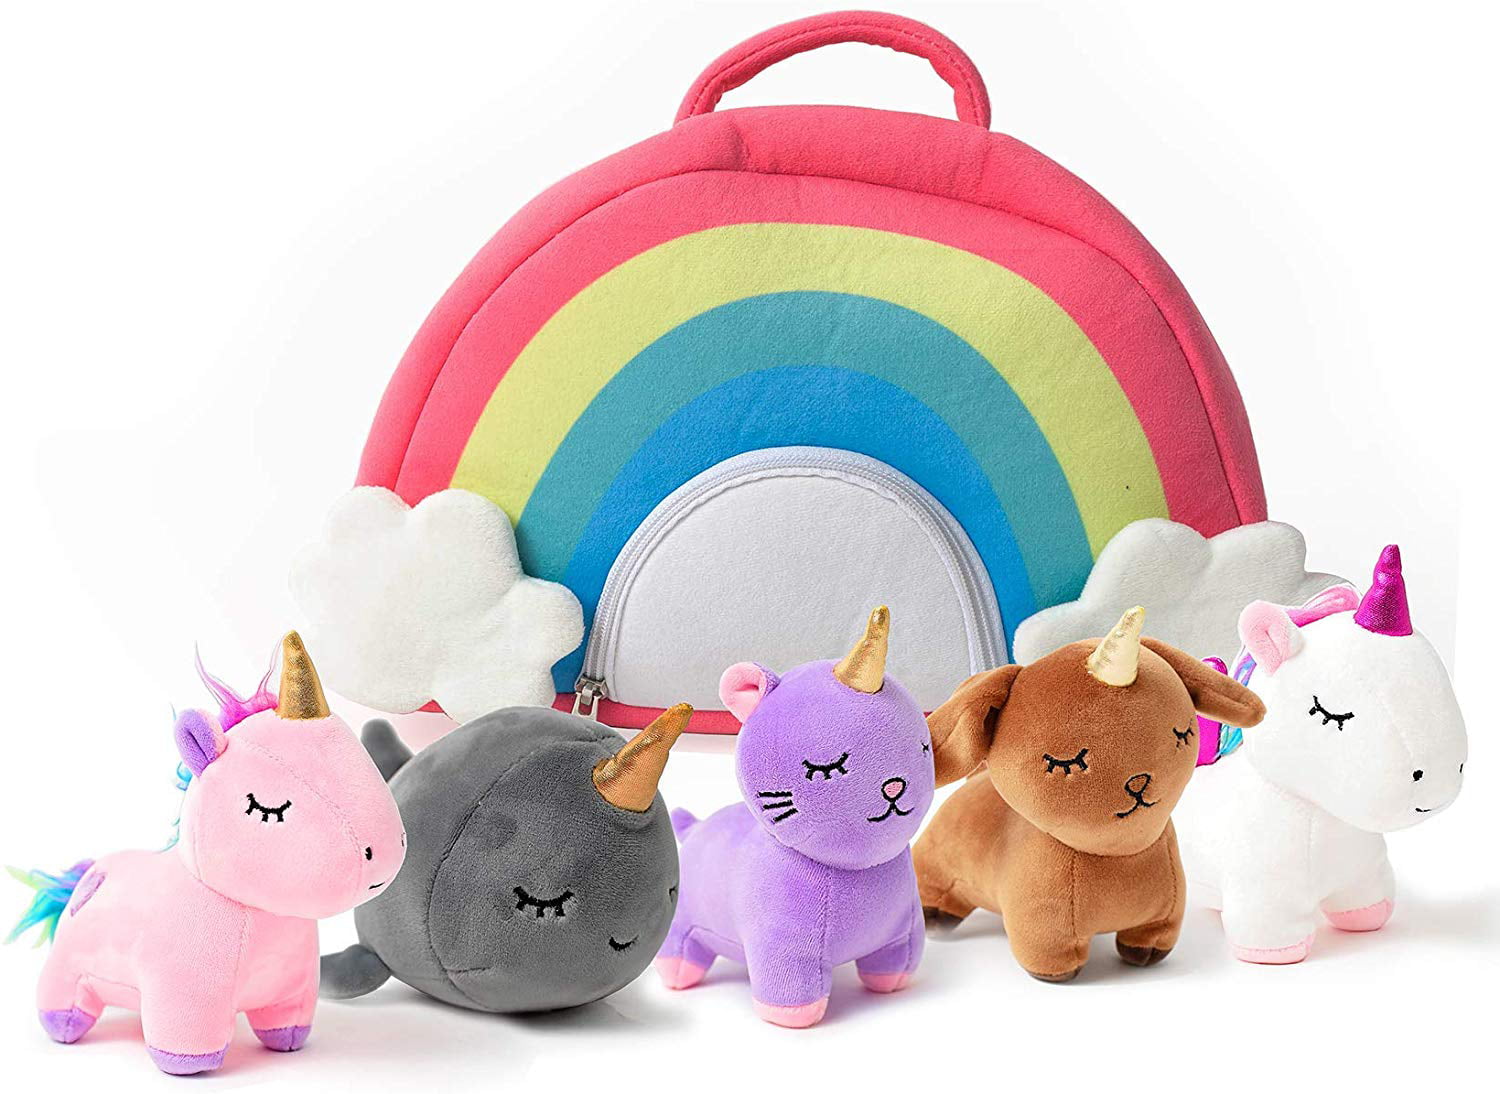 PixieCrush Unicorn Toys Stuffed Animal Gift Plush Set with Rainbow Case